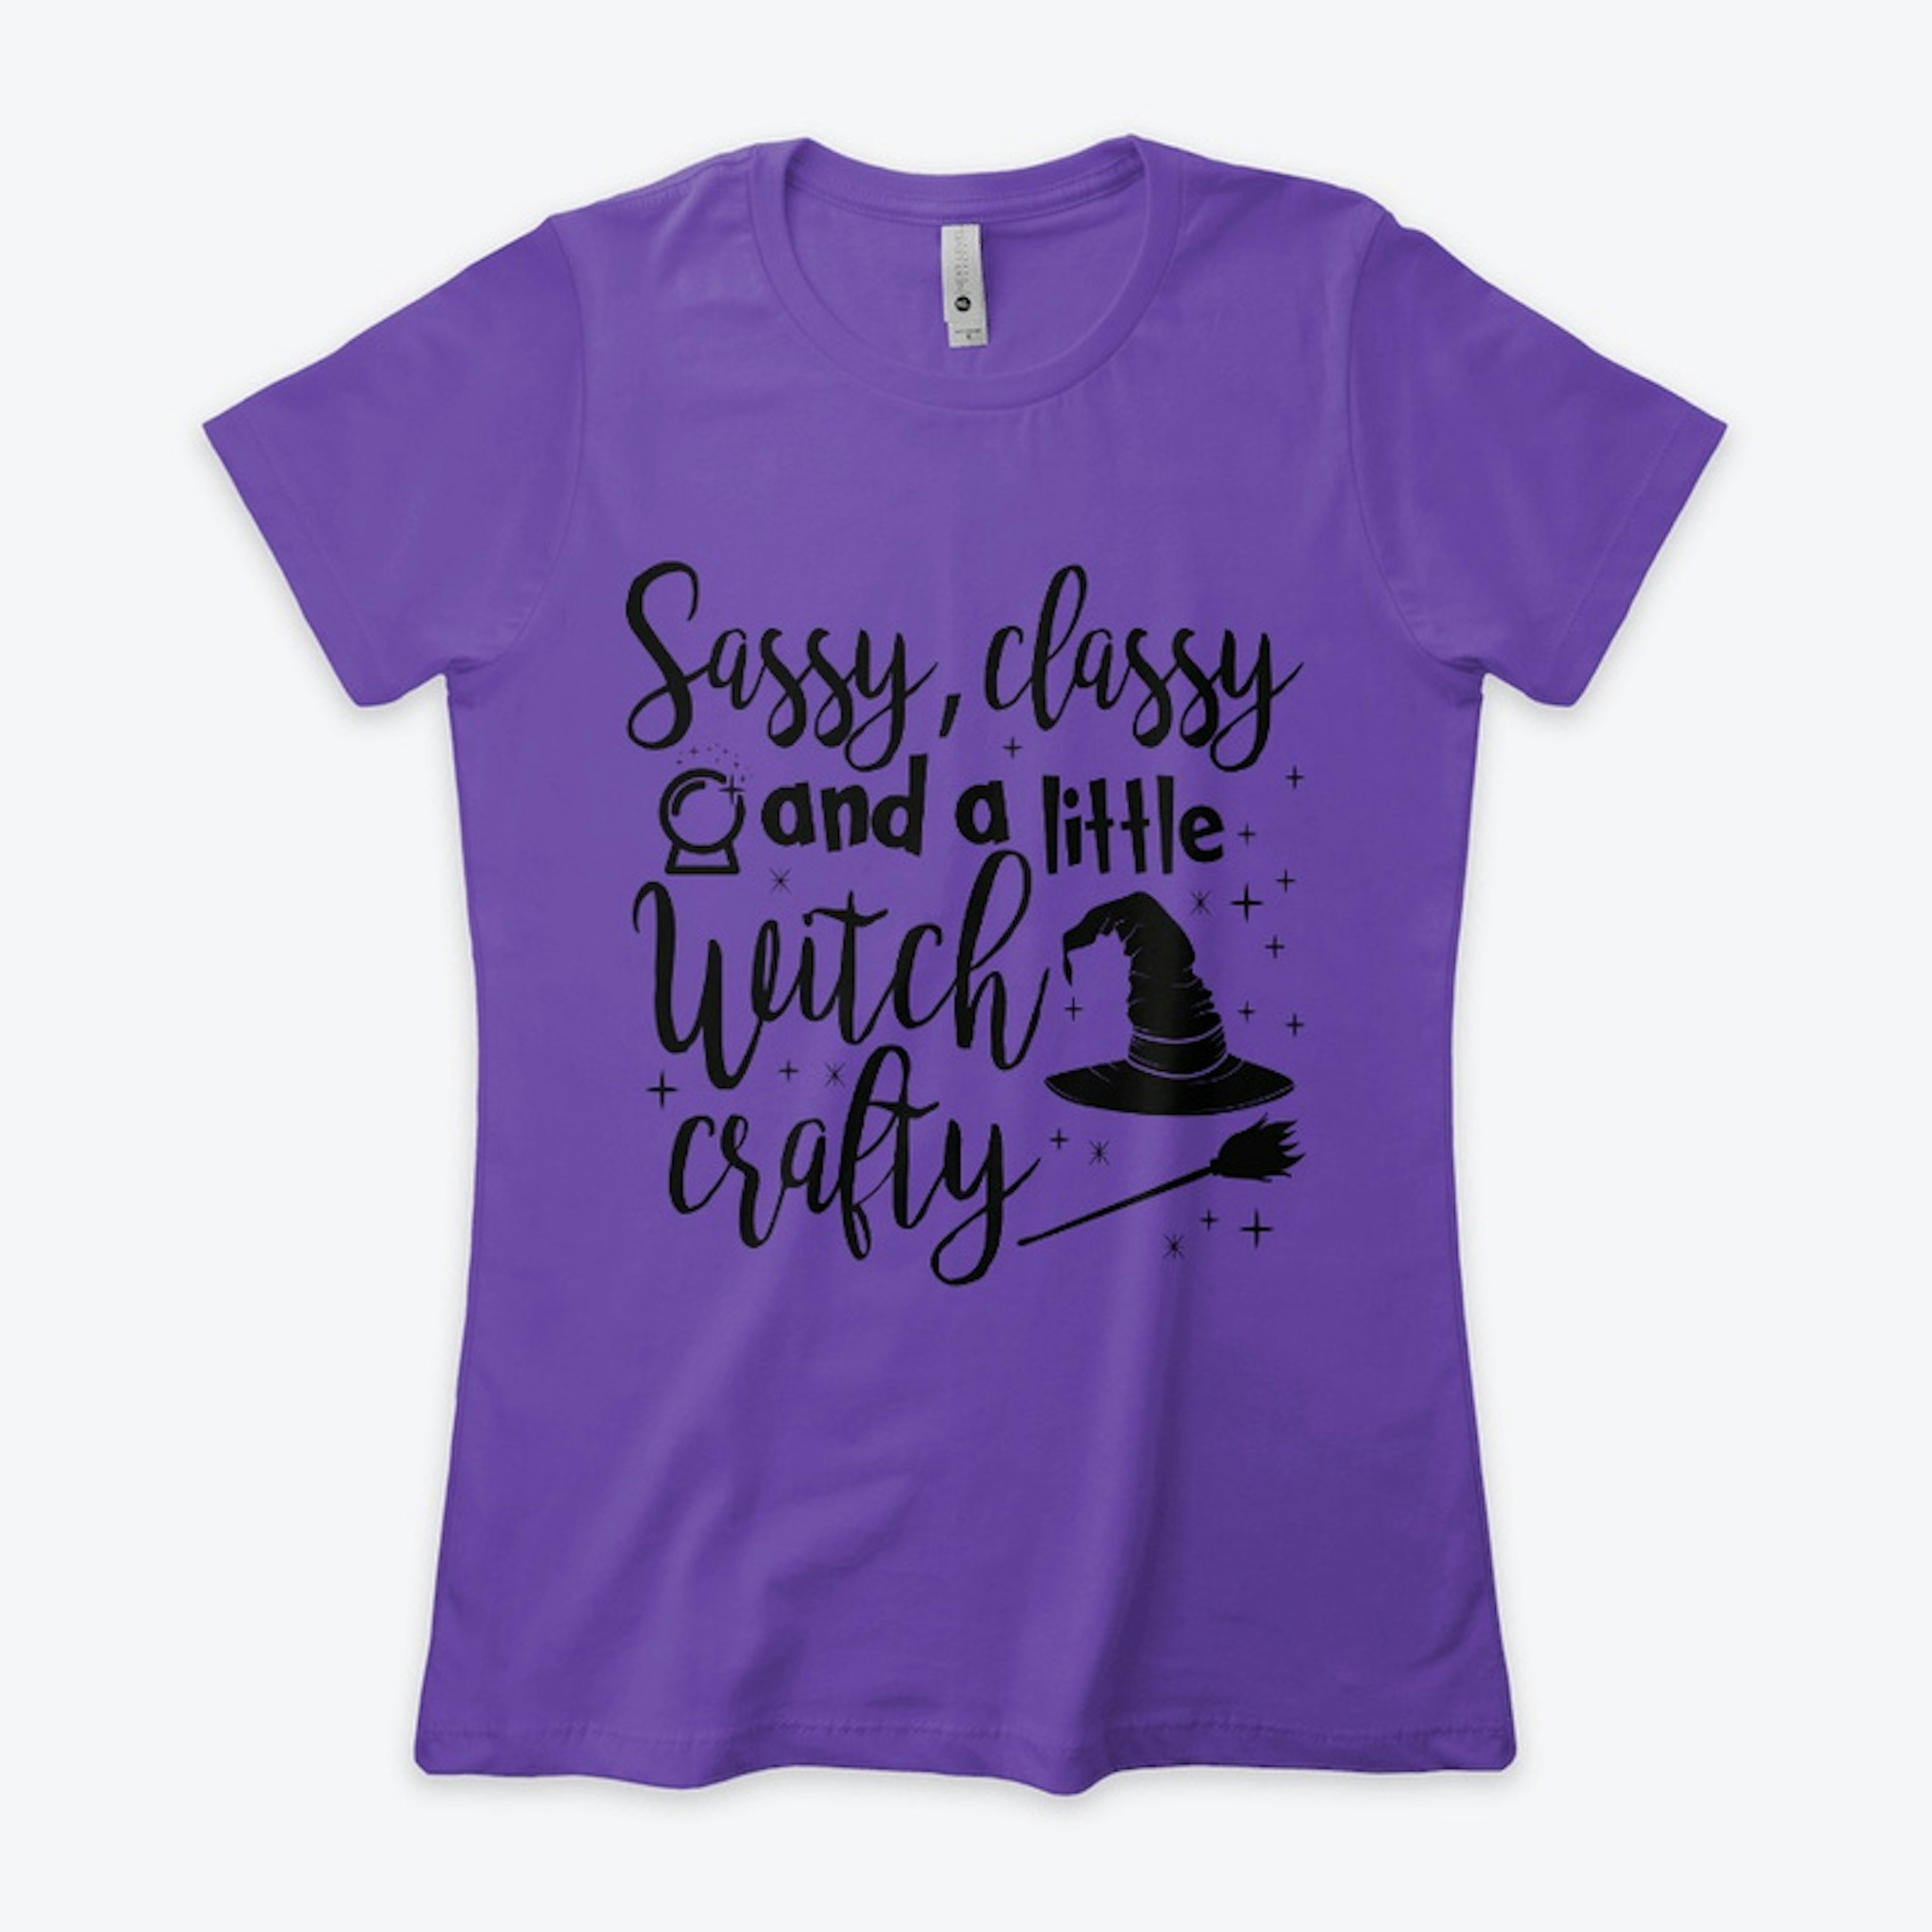 Sassy classy Witch